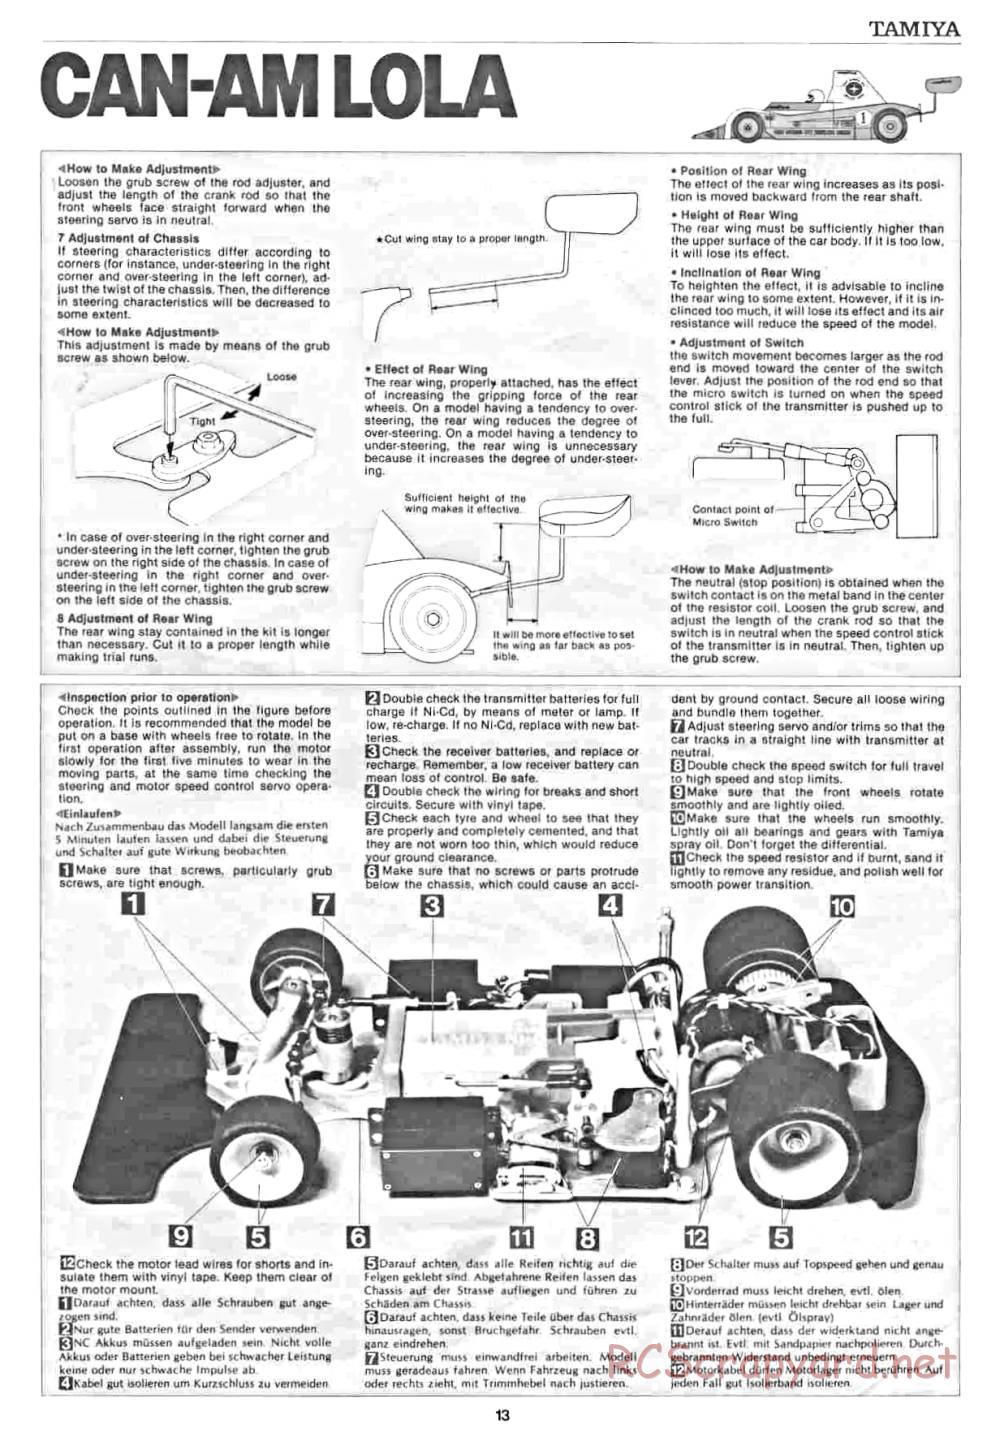 Tamiya - Can Am Lola - 58021 - Manual - Page 13